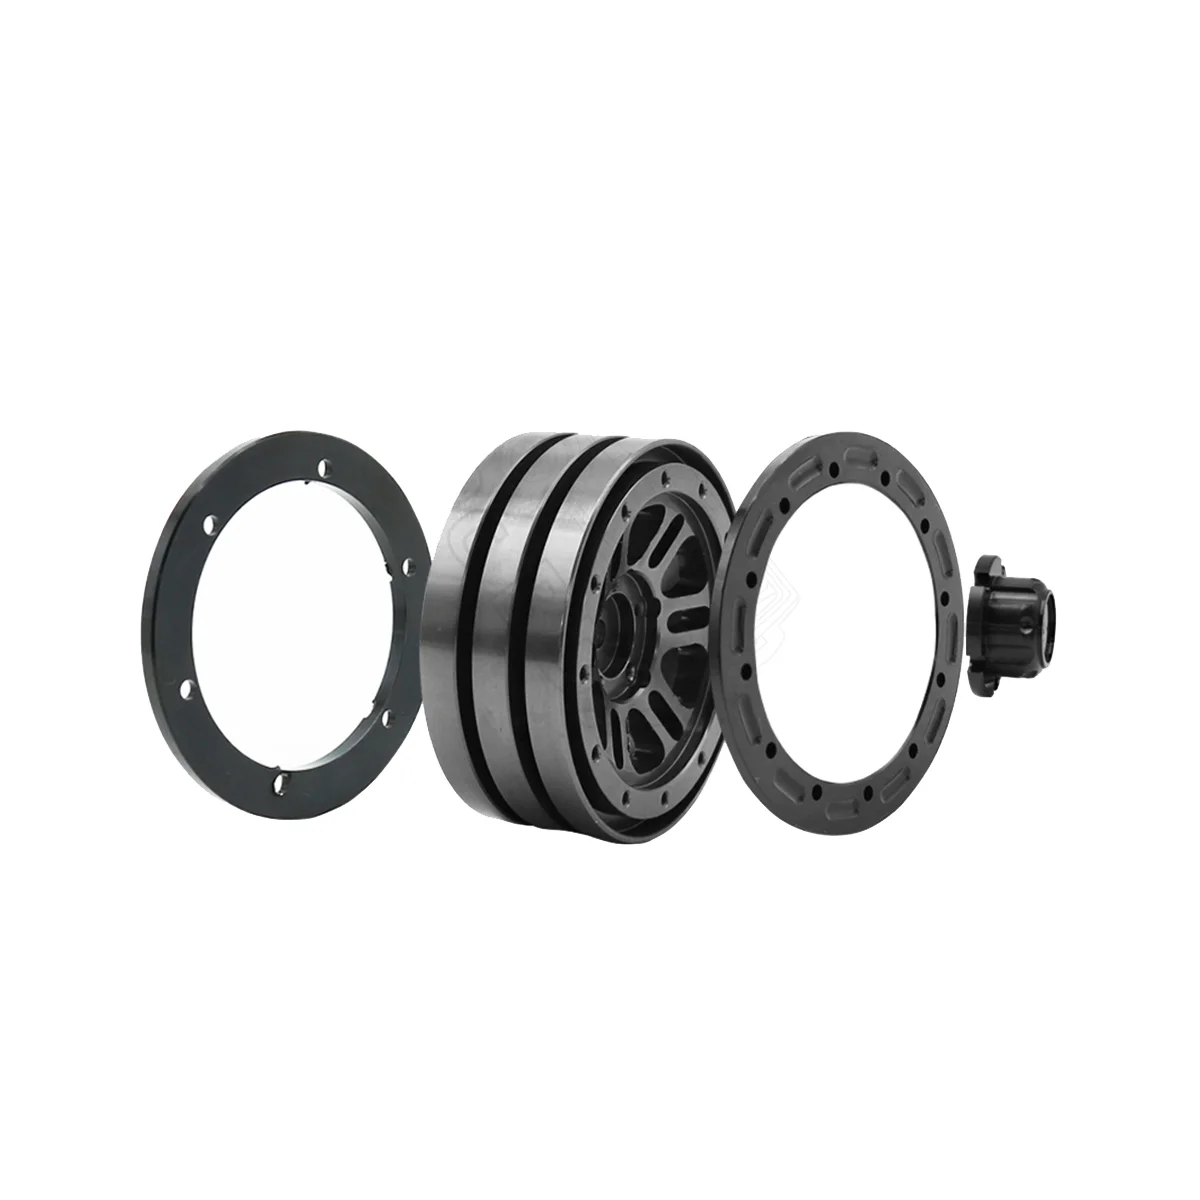 

4PCS 1.9 Inch Beadlock Wheel Rim Tires for 1/10 RC Rock Crawler Axial SCX10 90035 90022 90046 RC4WD D90 D110 TF2 TRX-4